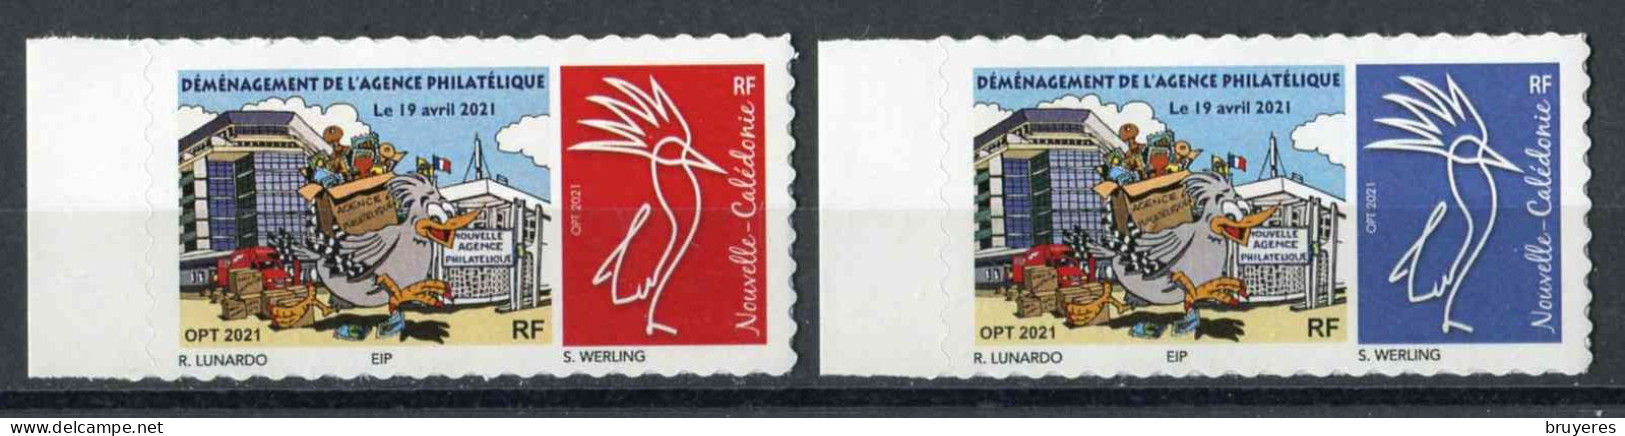 TIMBRES** De 2021 Adhésifs En Bord De Feuille De NOUVELLE-CALEDONIE "DEMENAGEMENT DE L'AGENCE PHILATELIQUE " - Unused Stamps